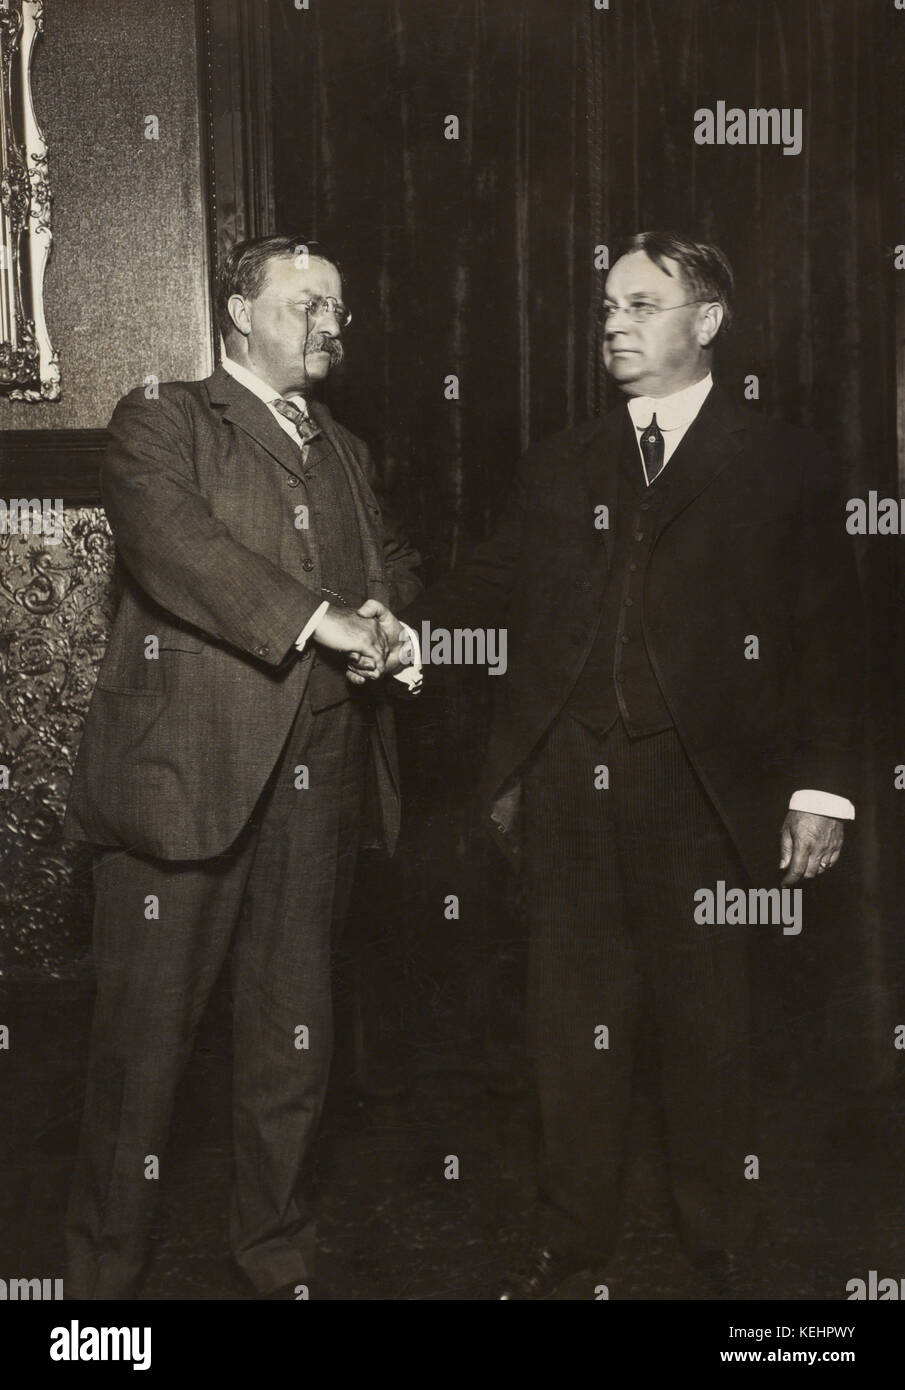 Theodore Roosevelt und Hiram Johnson, full-length portrait Händeschütteln nach wie Präsidentschafts- und Vizepräsidentenanwärter für die progressive oder Stier - Elche Partei, 1912 Nominierung Stockfoto